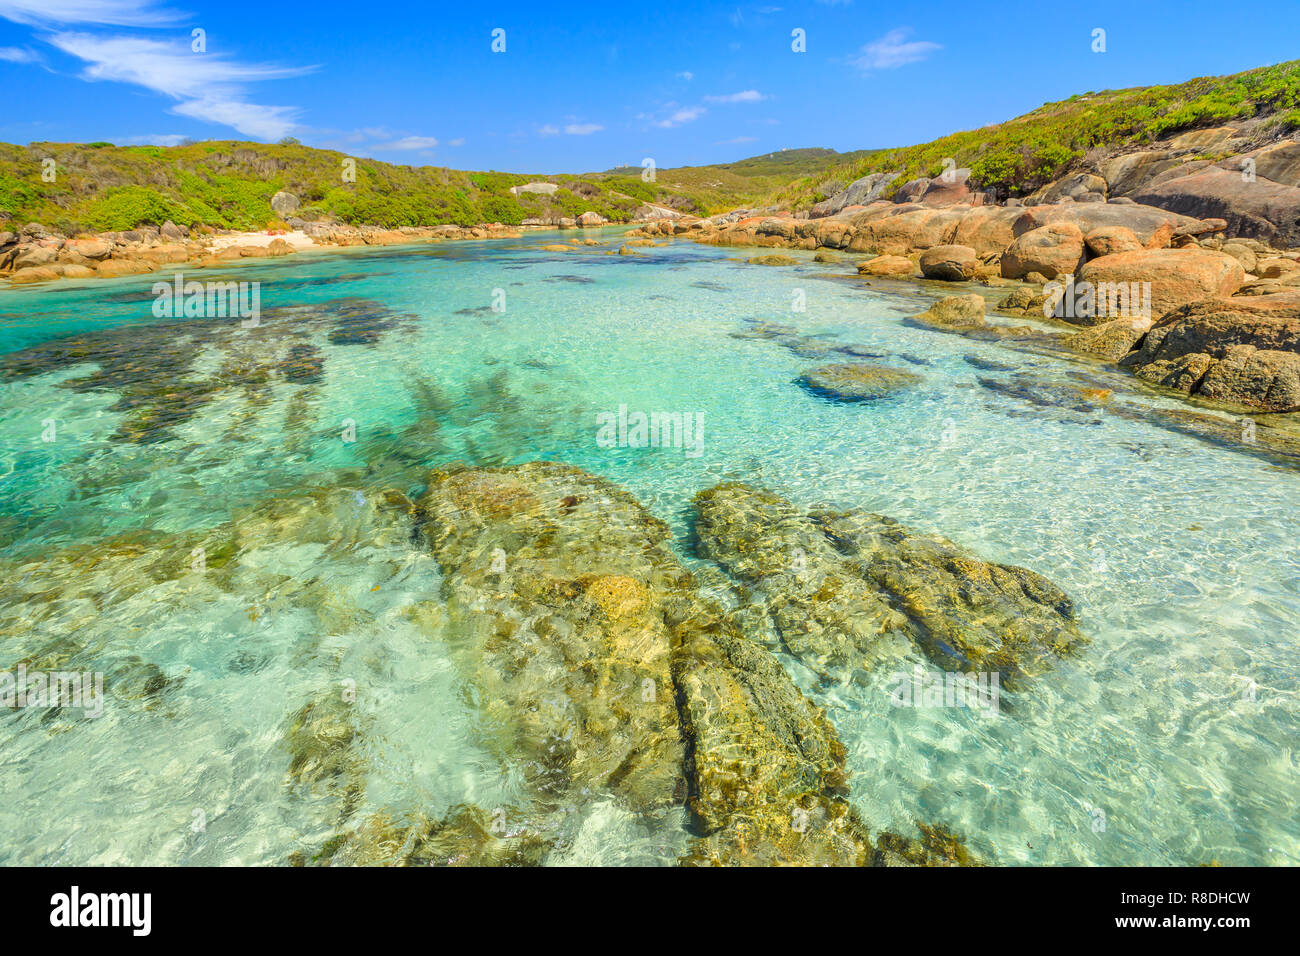 William Bay National Park, Danimarca, Western Australia. Paesaggio tropicale di acque turchesi di Madfish spiaggia circondata da formazioni rocciose. Sunny blue sky. Popolare destinazione estiva in Australia. Foto Stock